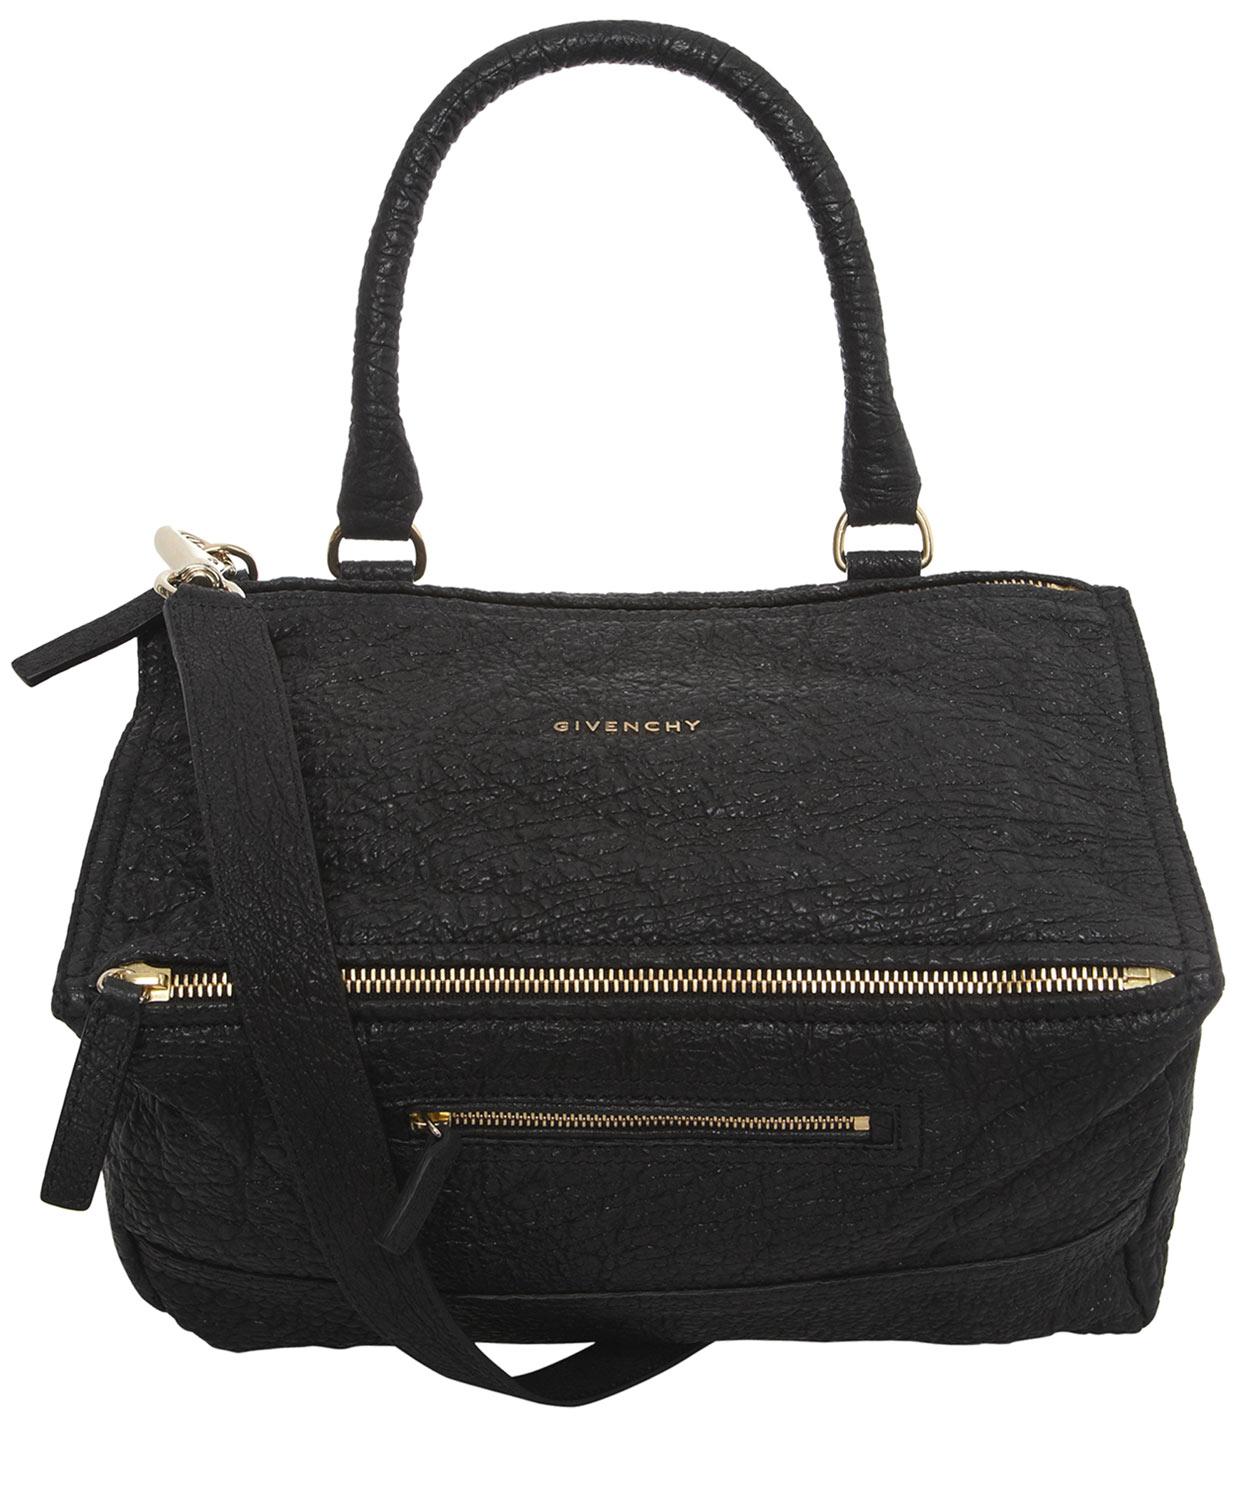 Lyst - Givenchy Medium Shoulder Bag in Black